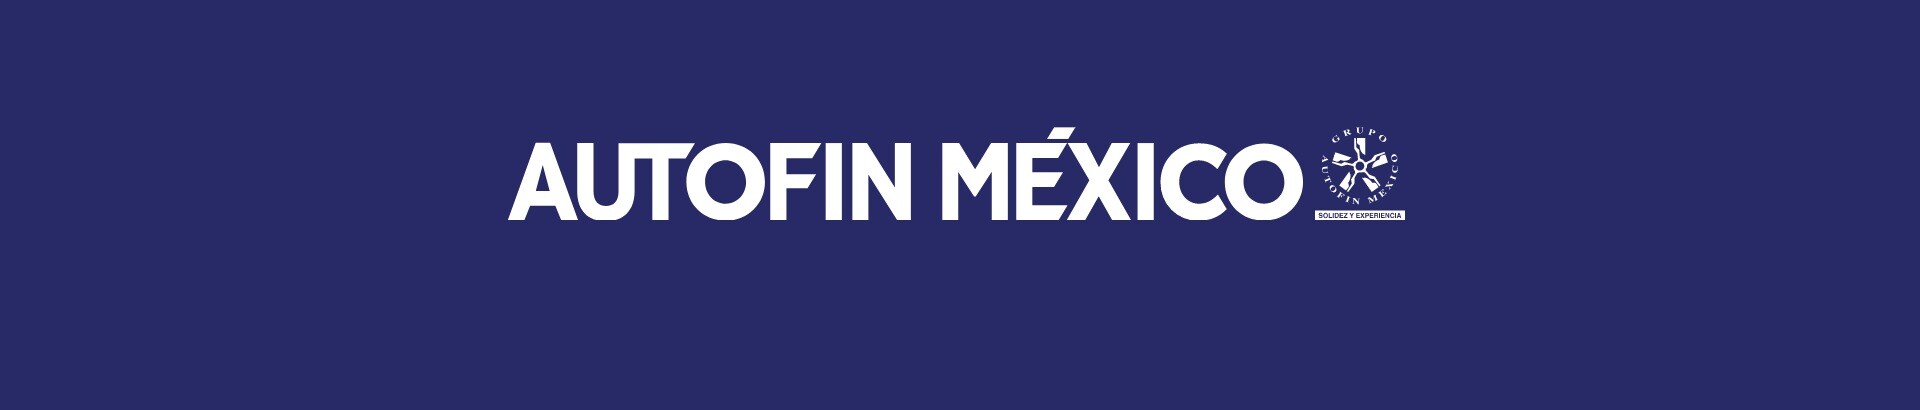 Ford Dinastía México